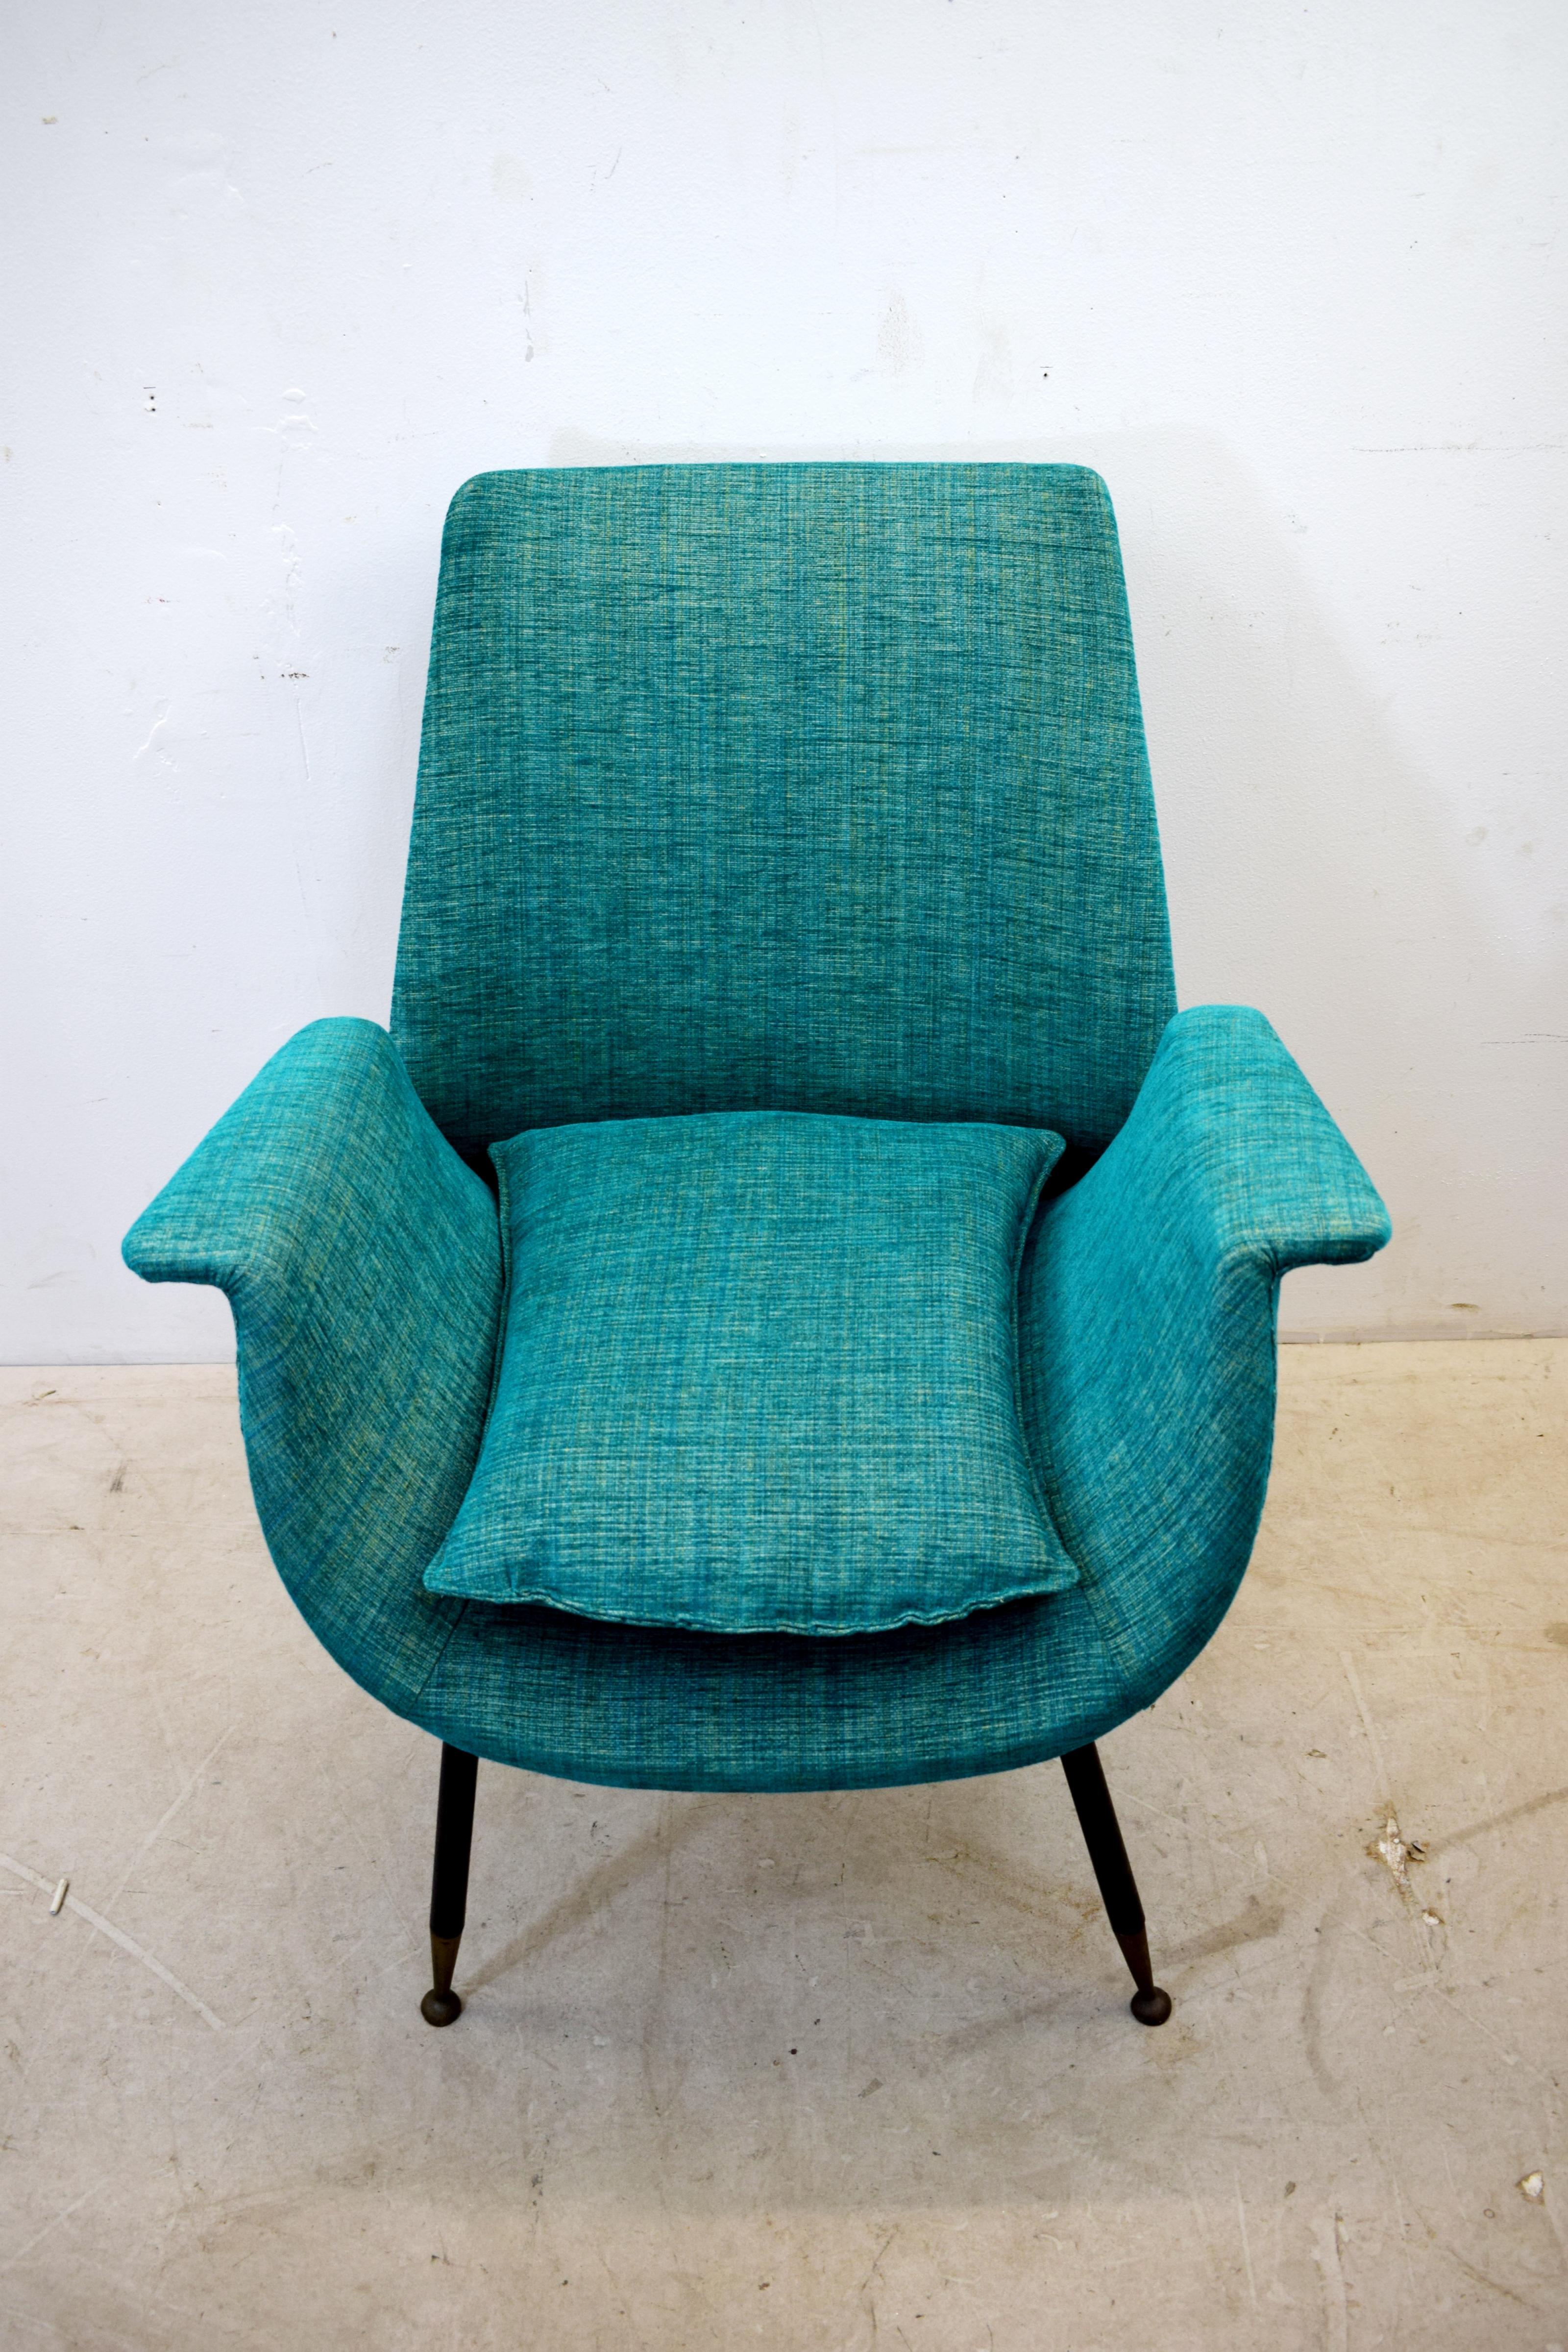 Italienischer Stuhl von Gastone Rinaldi, 1950er Jahre.
Abmessungen: H= 82 cm; B= 65 cm; T= 65 cm; Sitzhöhe = 45 cm.